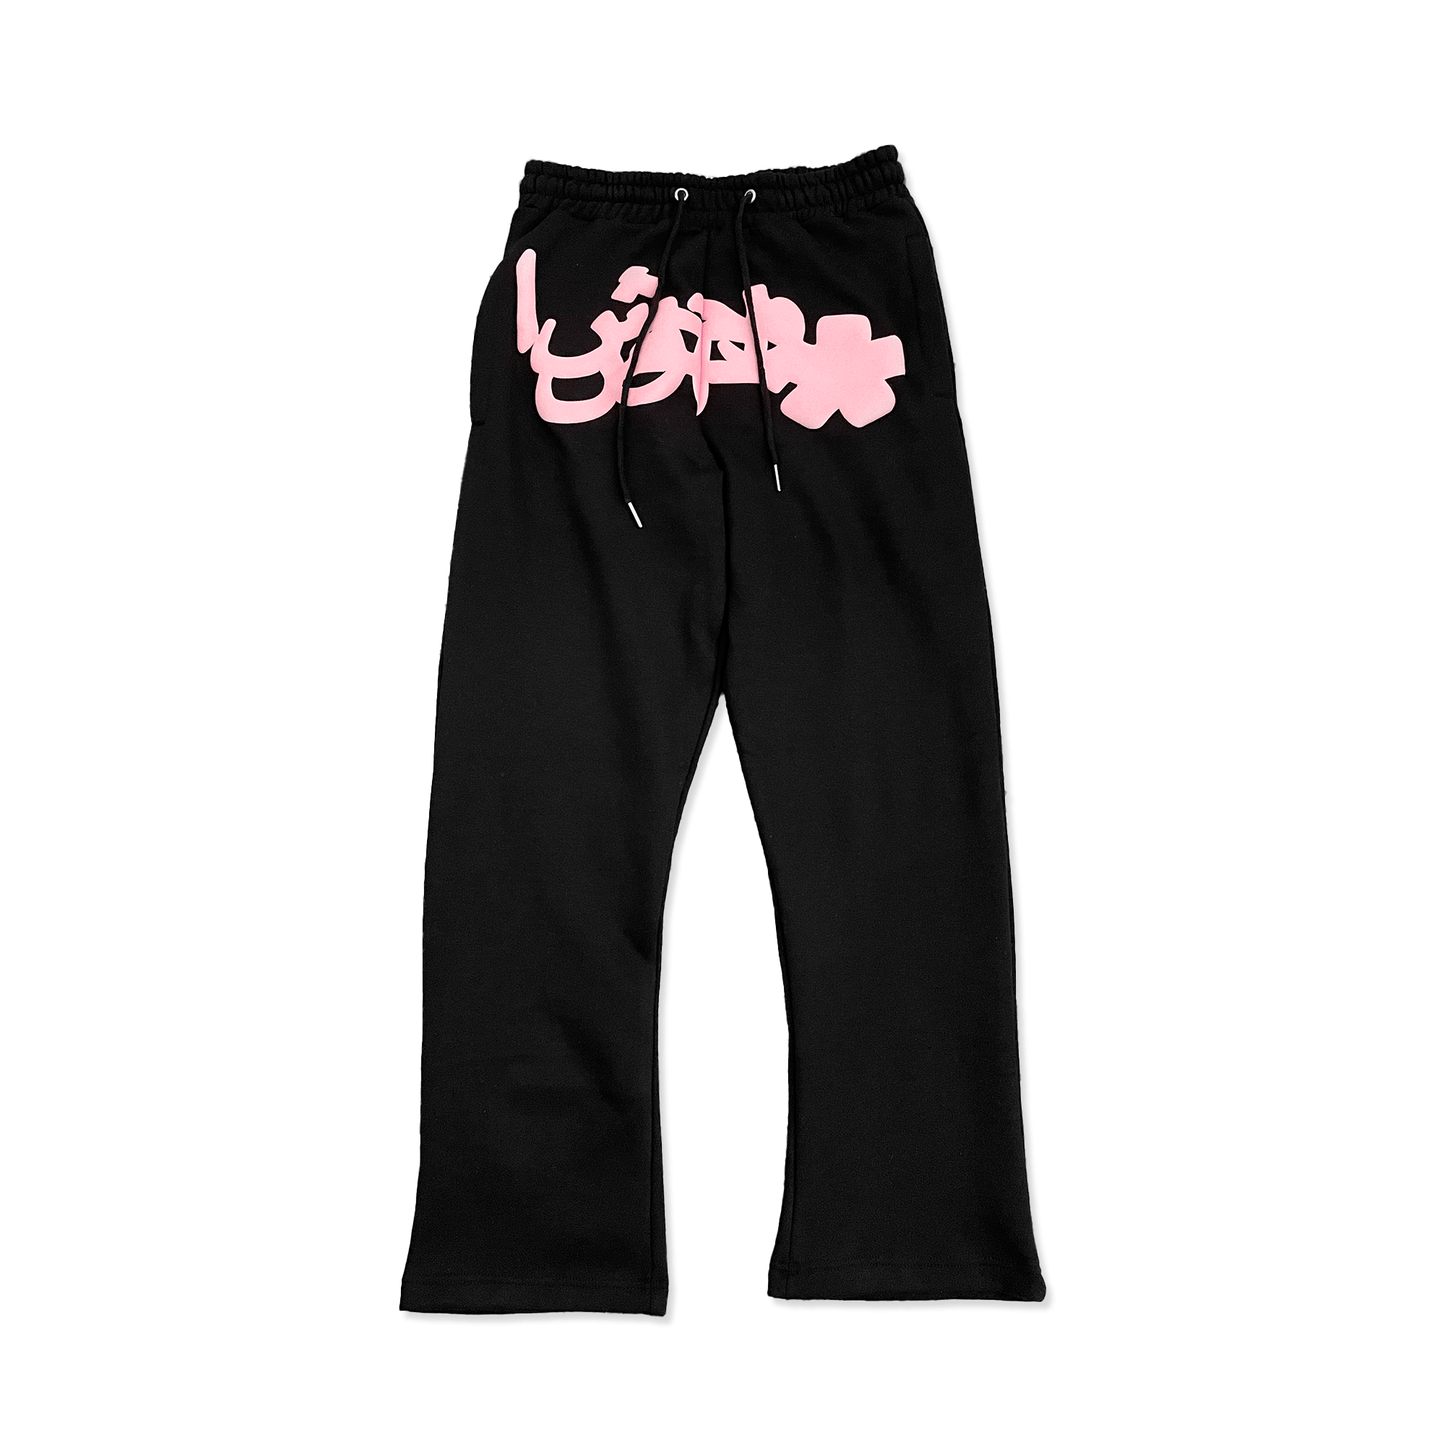 Black/Pink OG Arabic Sweatpants